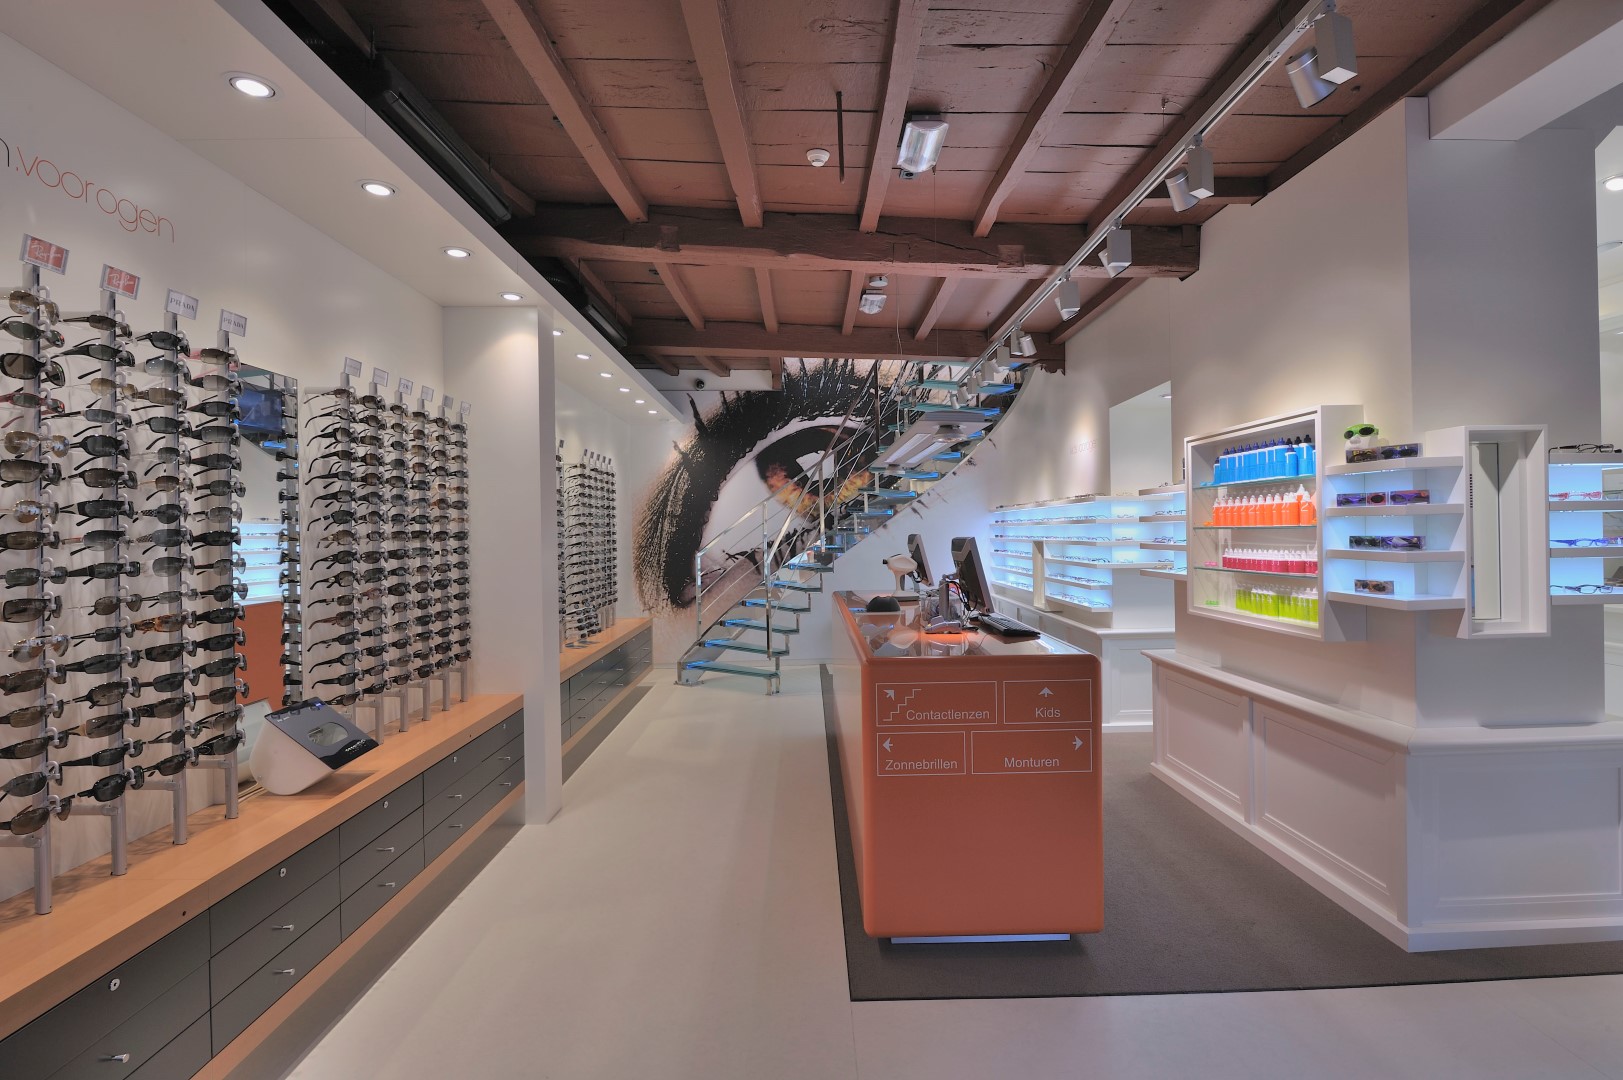 Jochem for eyes: Interior design + made - Optician